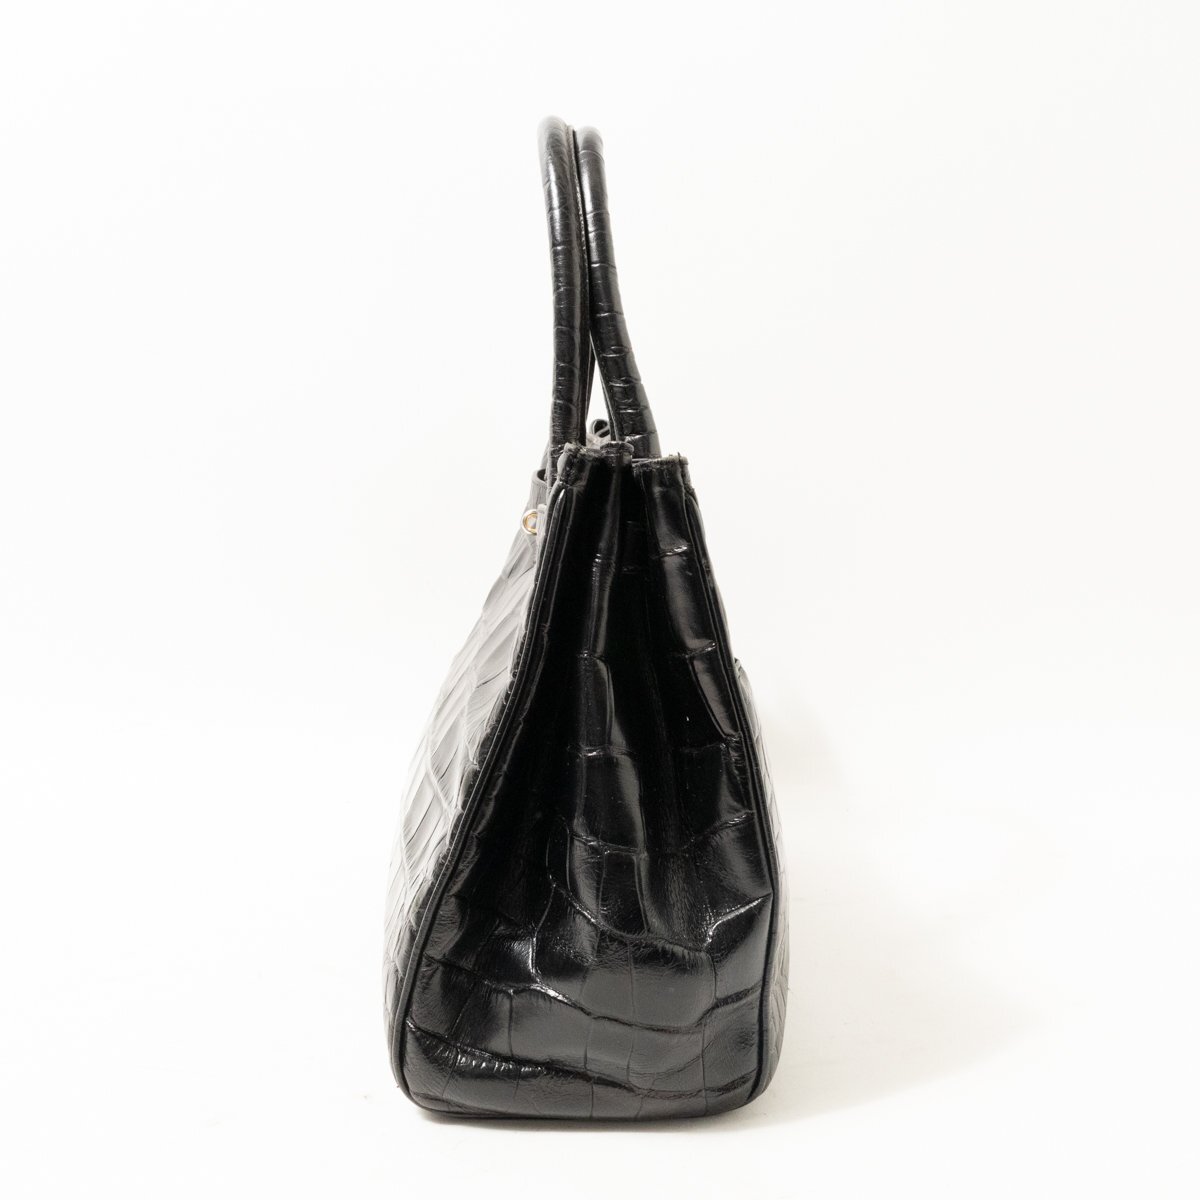 NIERI ARGENTI ニエルアルジェンティ ハンドバッグ ブラック 黒 ゴールド レザー 本革 型押し イタリア製 レディース 手さげ きれいめ bag_画像4